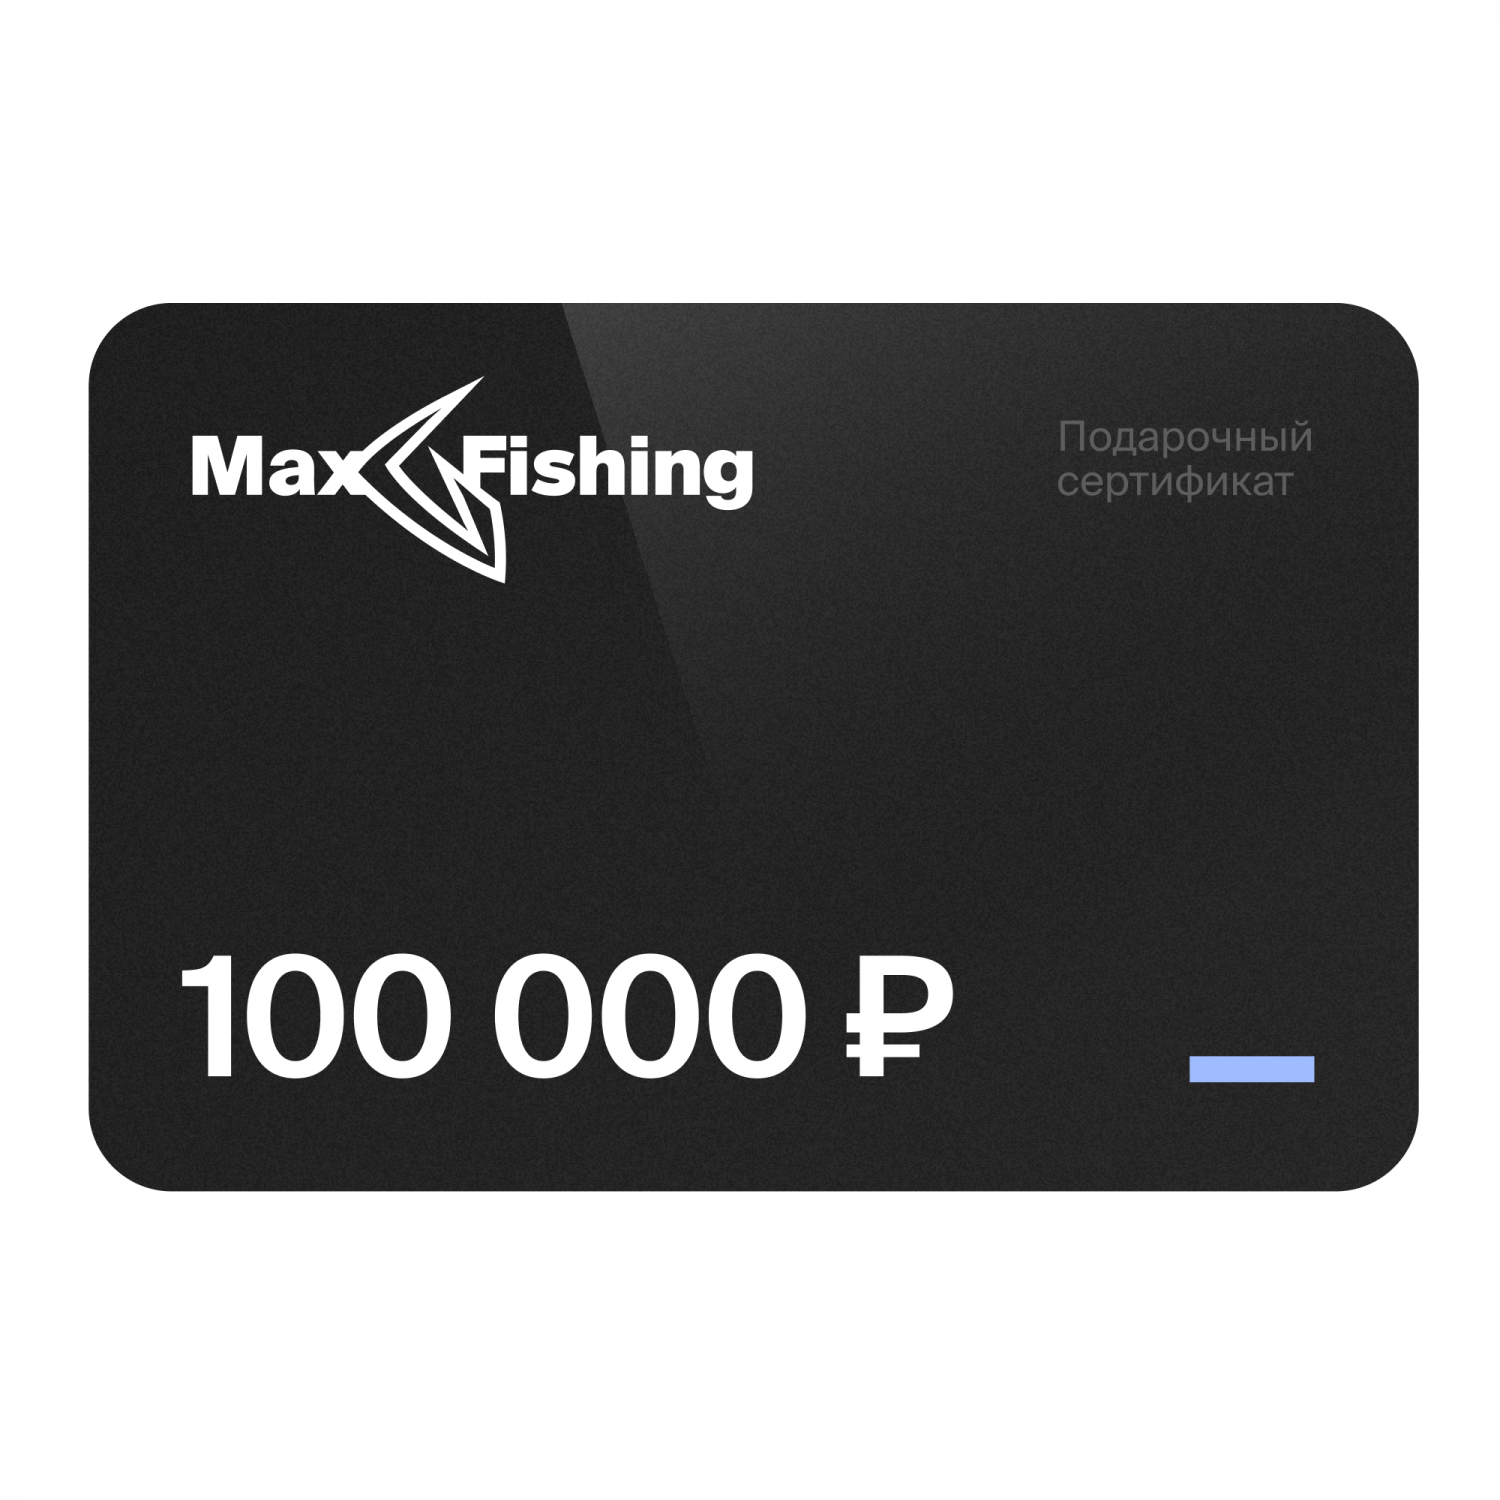 Подарочный сертификат MaxFishing 100 000 ₽ подарочный сертификат maxfishing 100